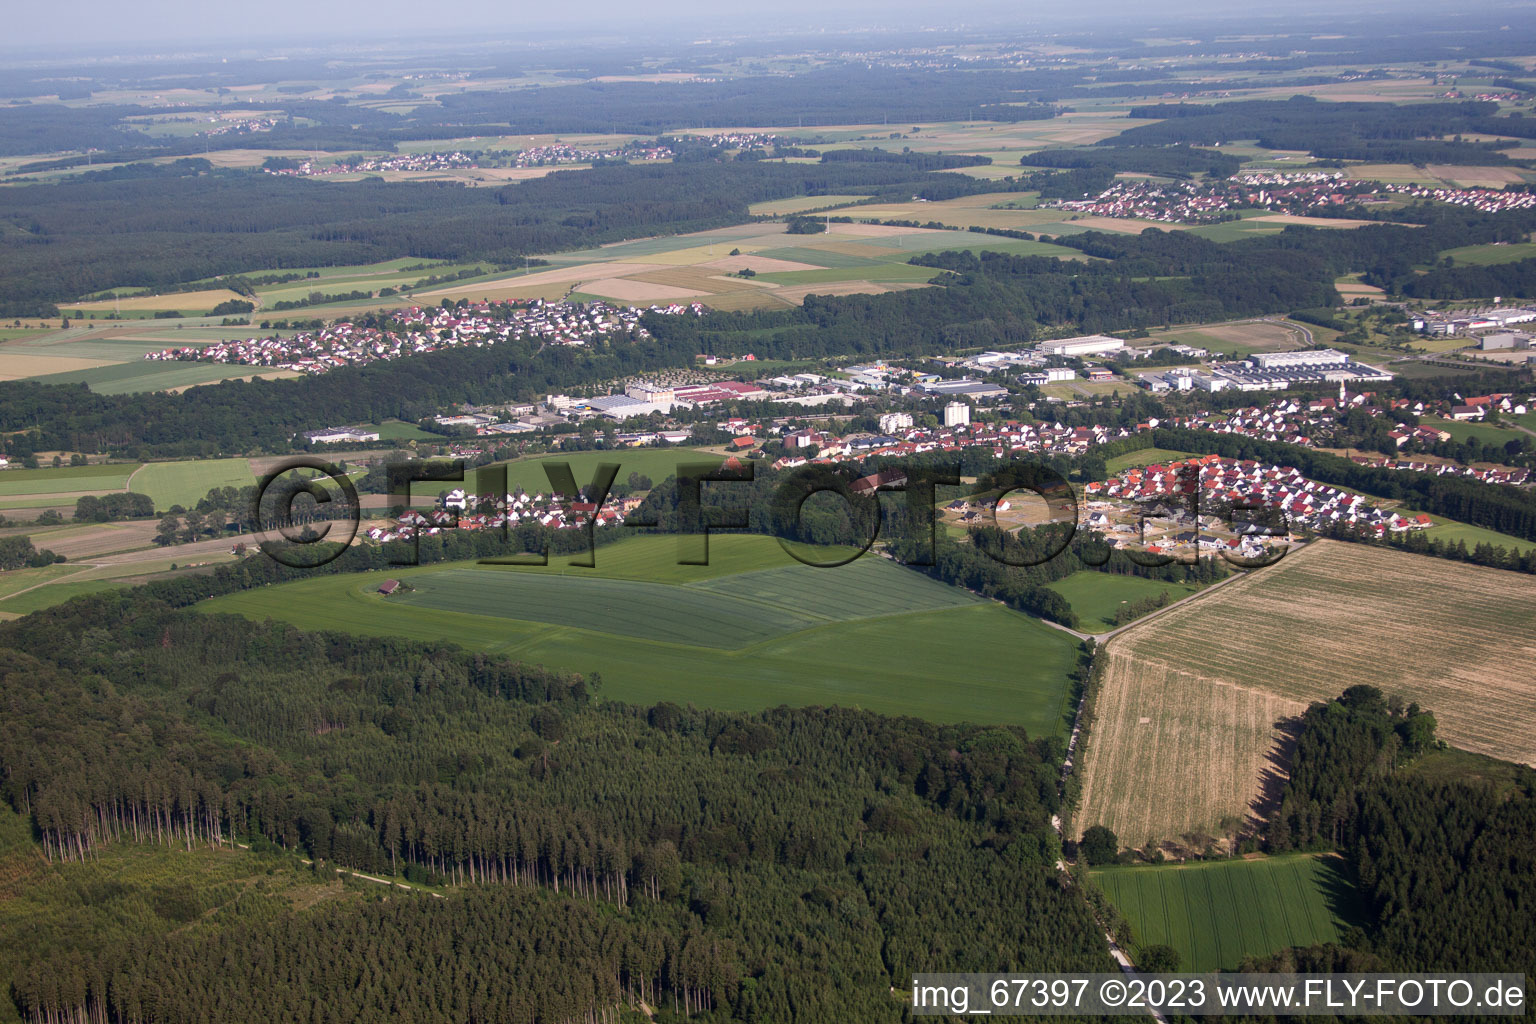 Luftbild von Biberach an der Riss in Biberach an der Riß im Bundesland Baden-Württemberg, Deutschland